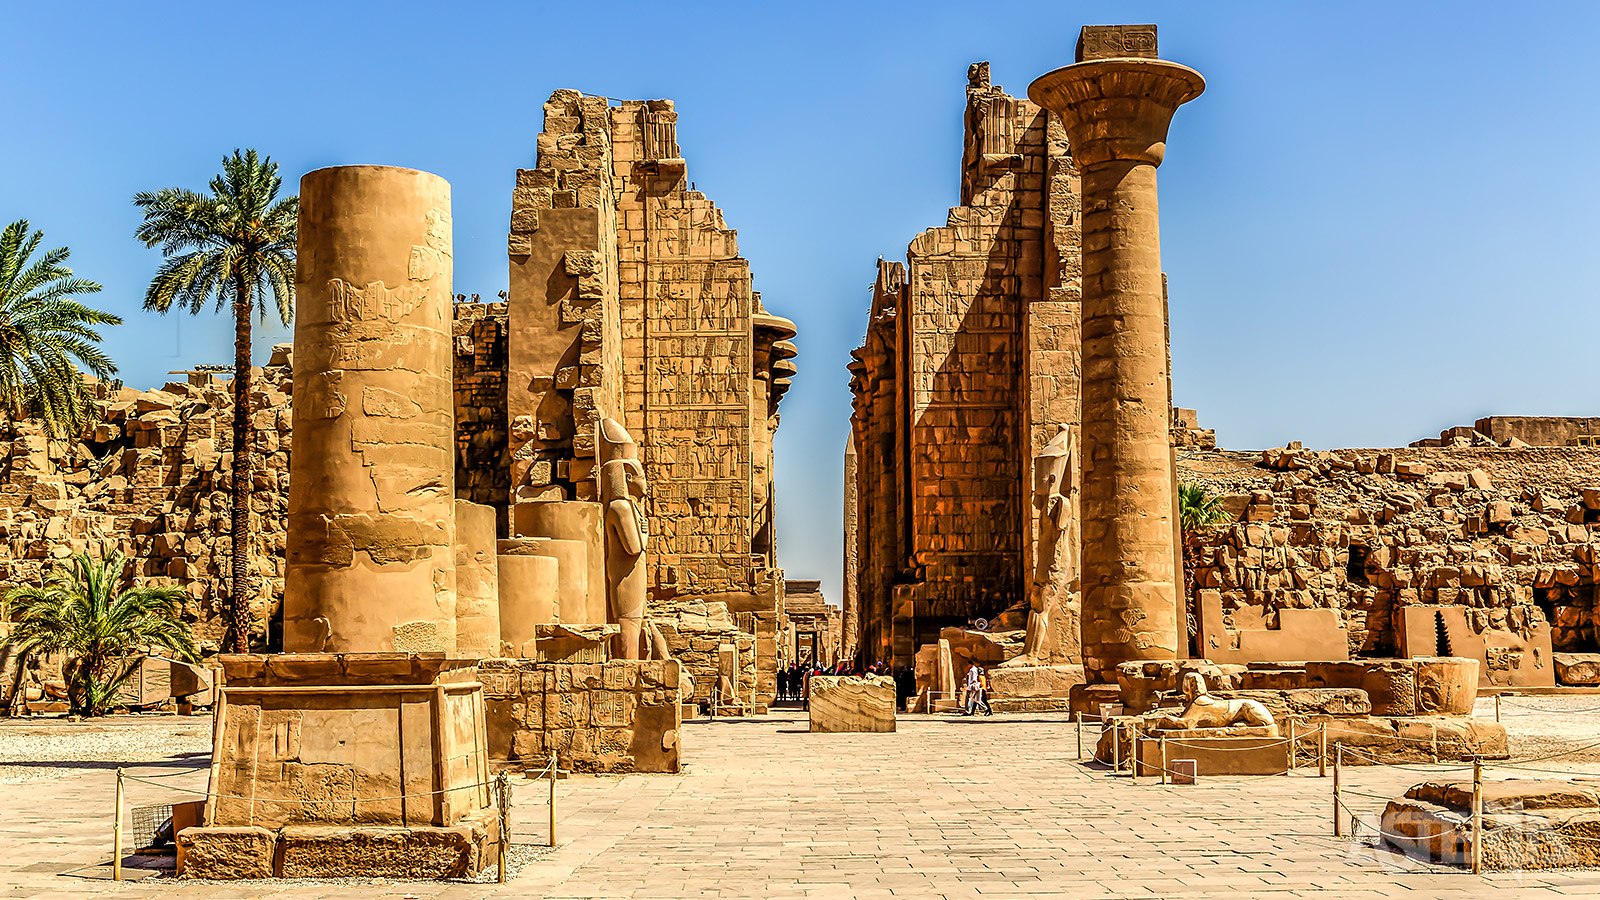 Het complex van Karnak is één van de grootste tempelcomplexen ter wereld